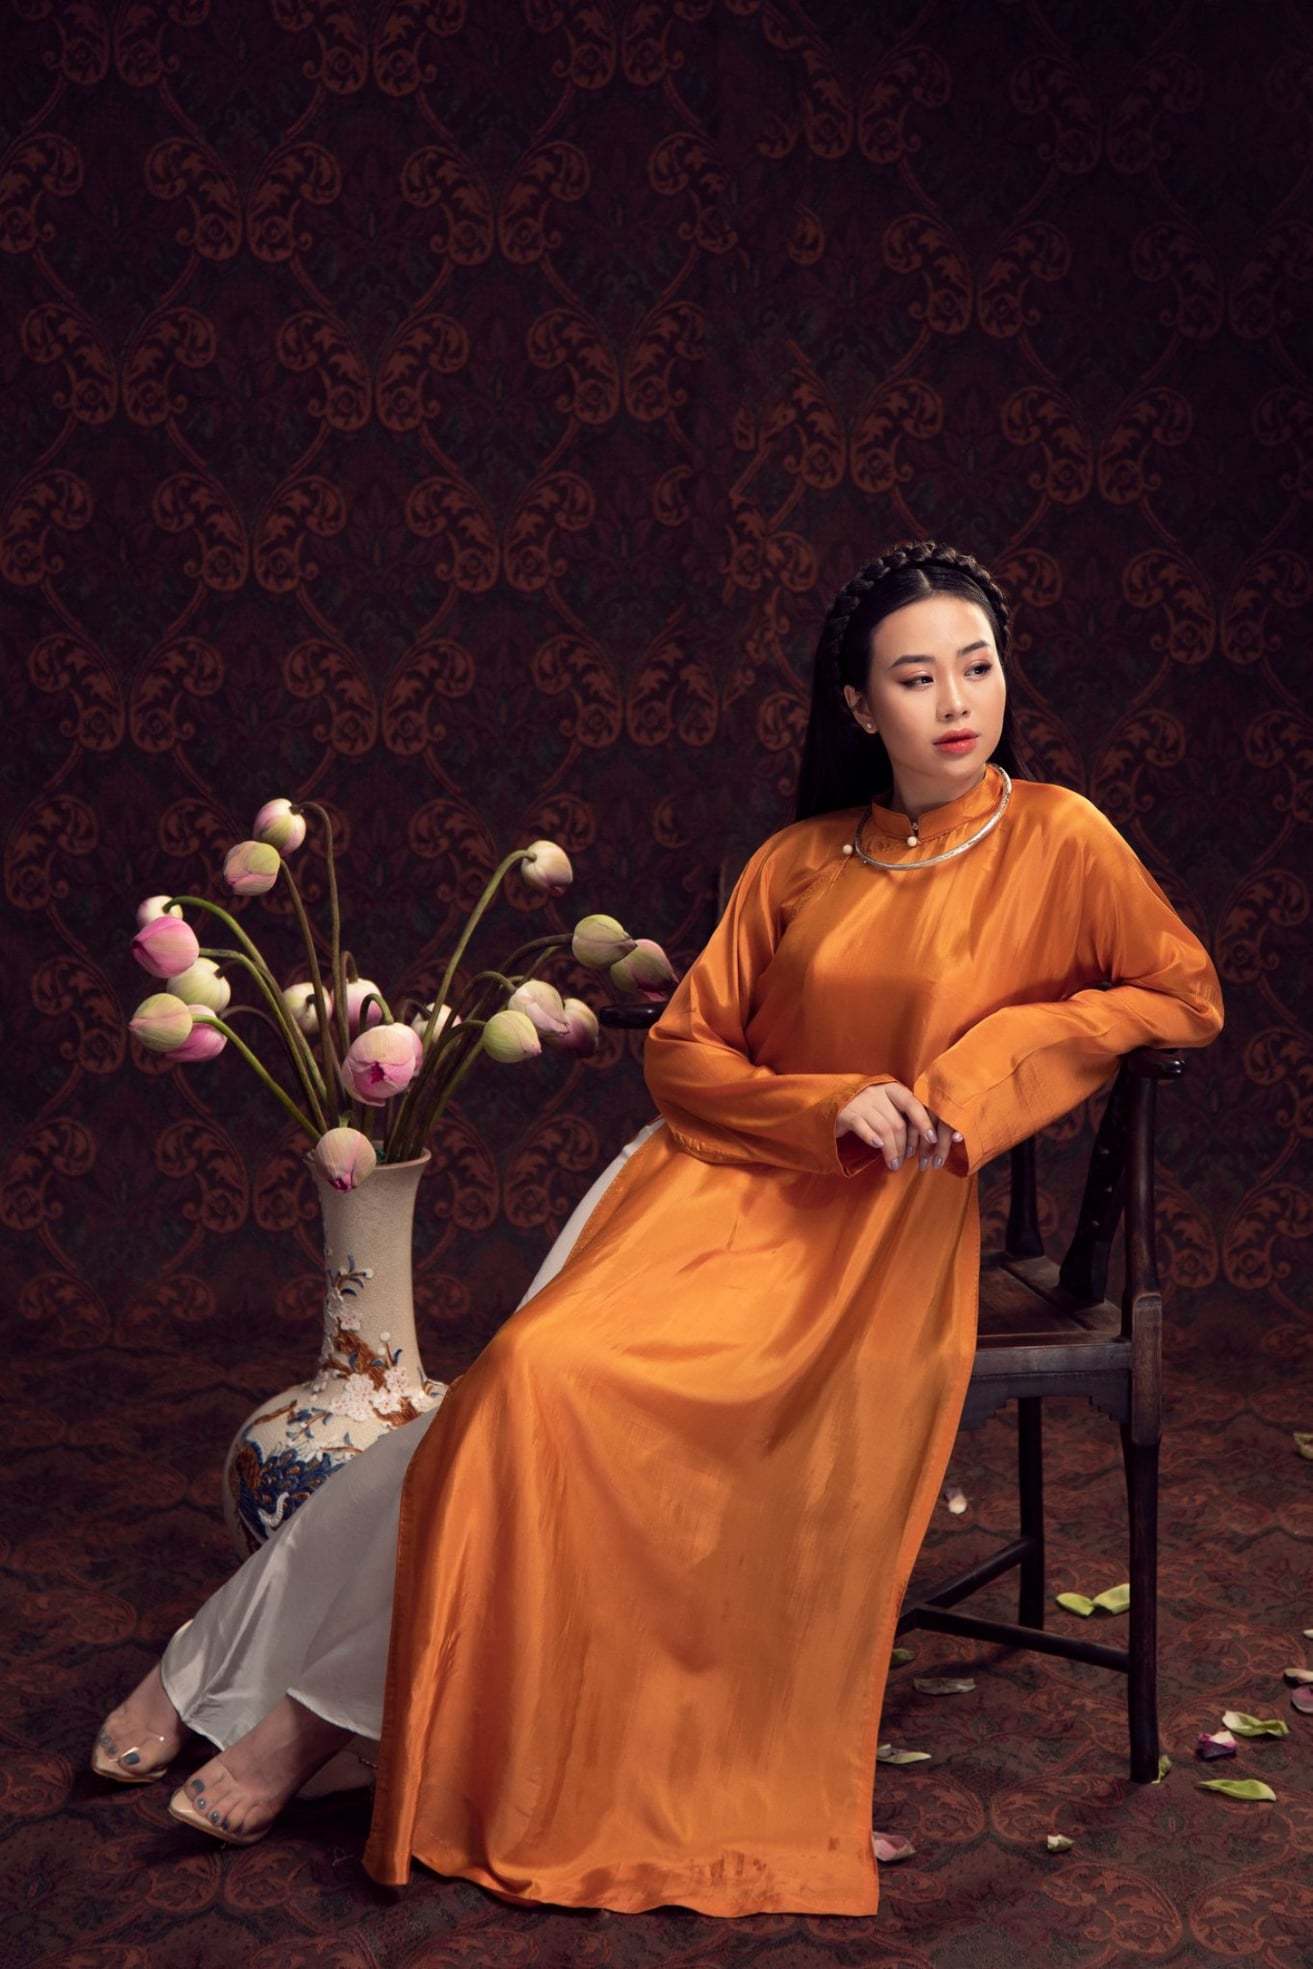 'Nàng thơ' Dương Huệ ra mắt album với loạt tình khúc 'Yêu'